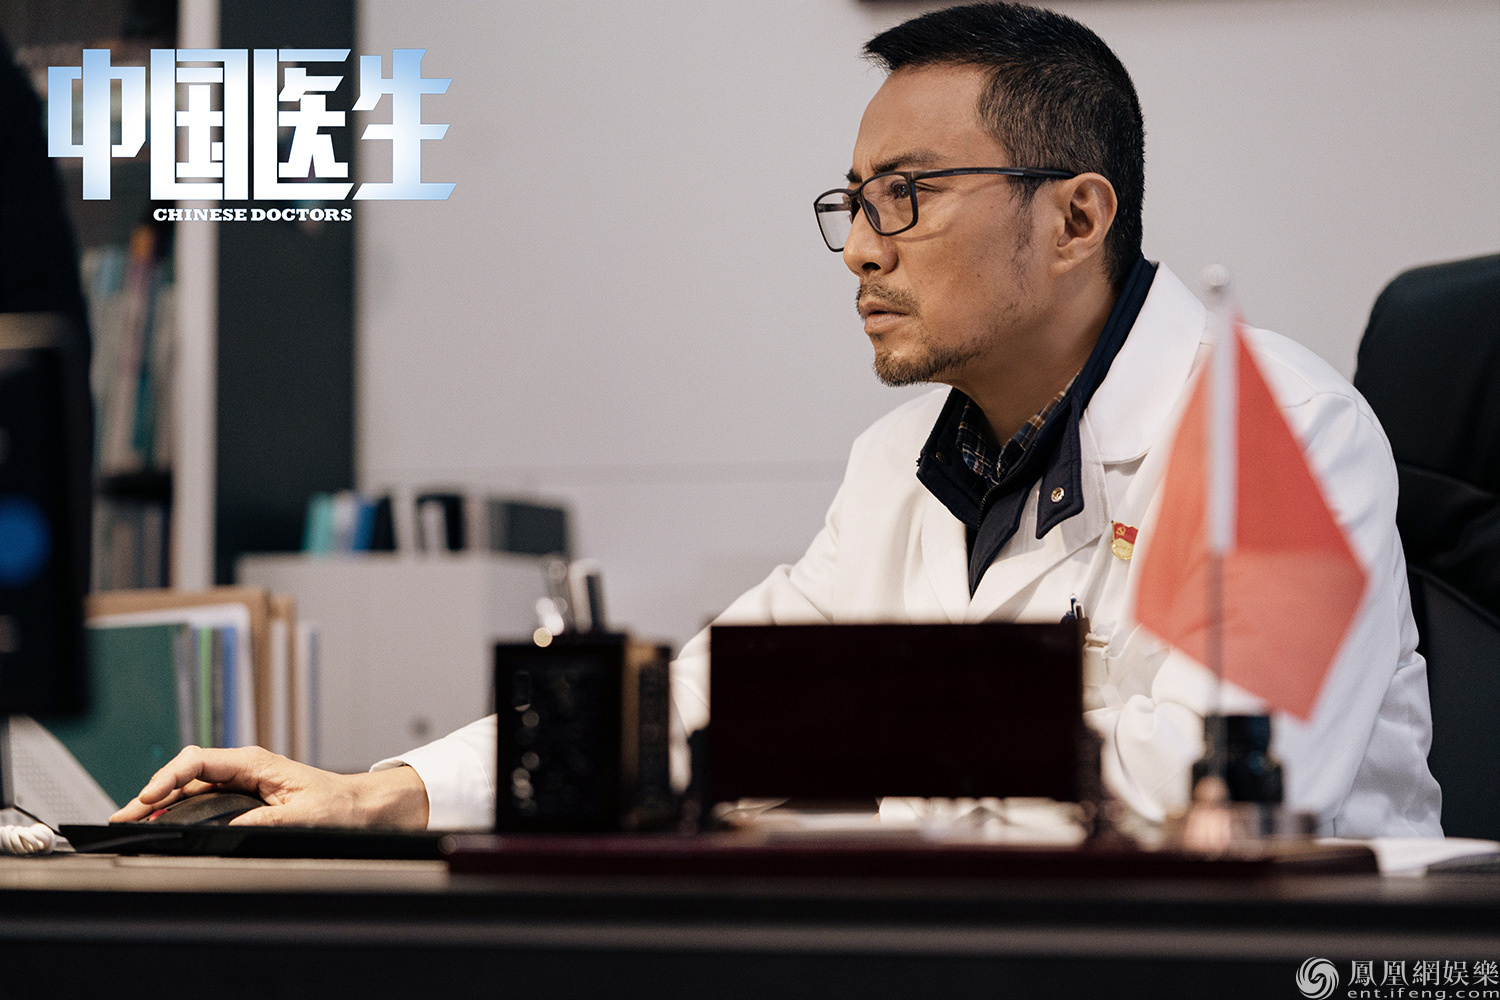 中国医生 演员 角色图片